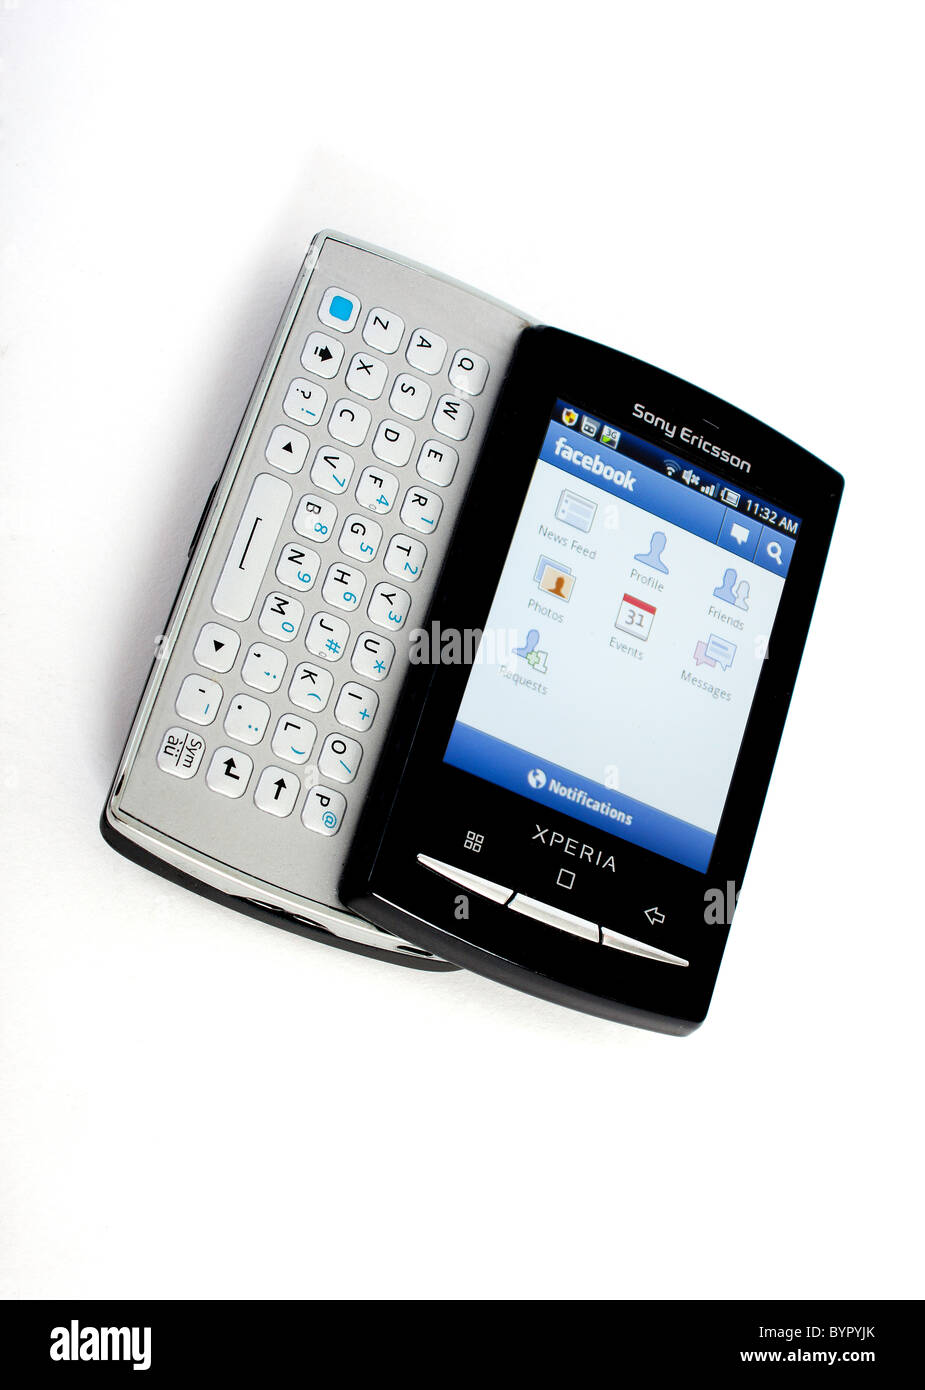 Das neue Sony Ericsson Xperia Mini pro Handy mit voller Slide-out QWERTY-Tastatur; Anzeigen von Google Androiden Facebook Stockfoto